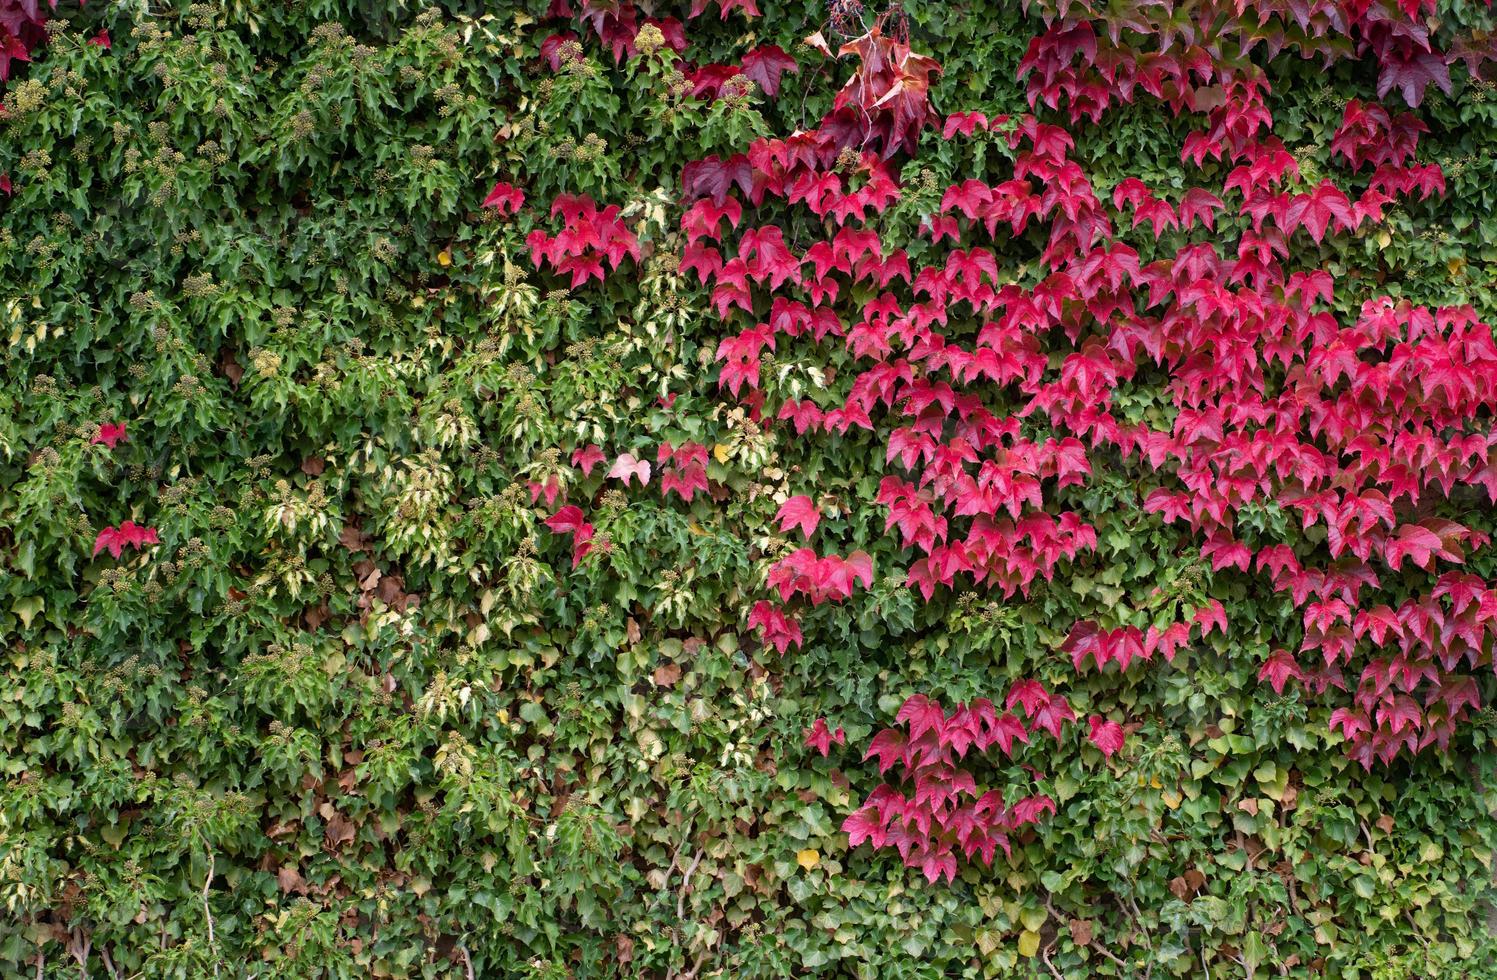 fondo y textura de una pared cubierta de hiedra y enredadera de virginia. la hiedra es verde. las hojas de la enredadera de virginia brillan en rojo y forman un contraste. foto